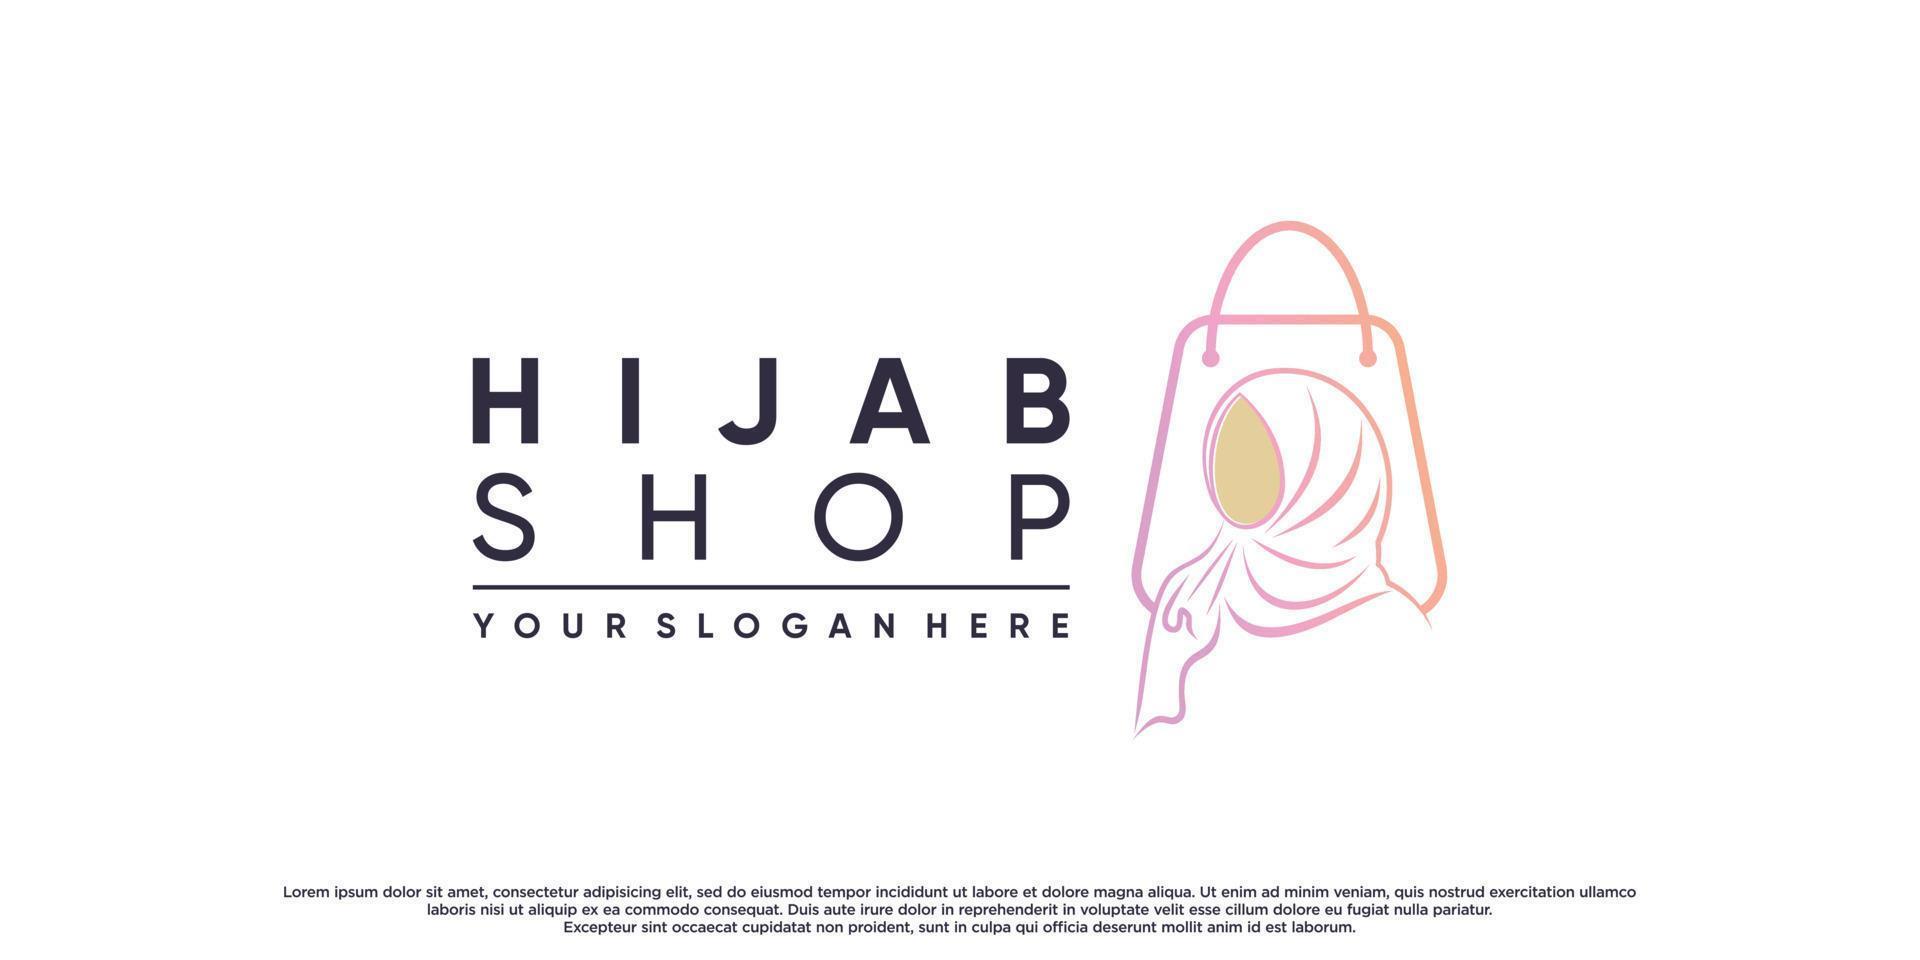 Hijab-Shop-Logo für muslimische Schönheitsmode mit kreativem Konzept-Premium-Vektor vektor